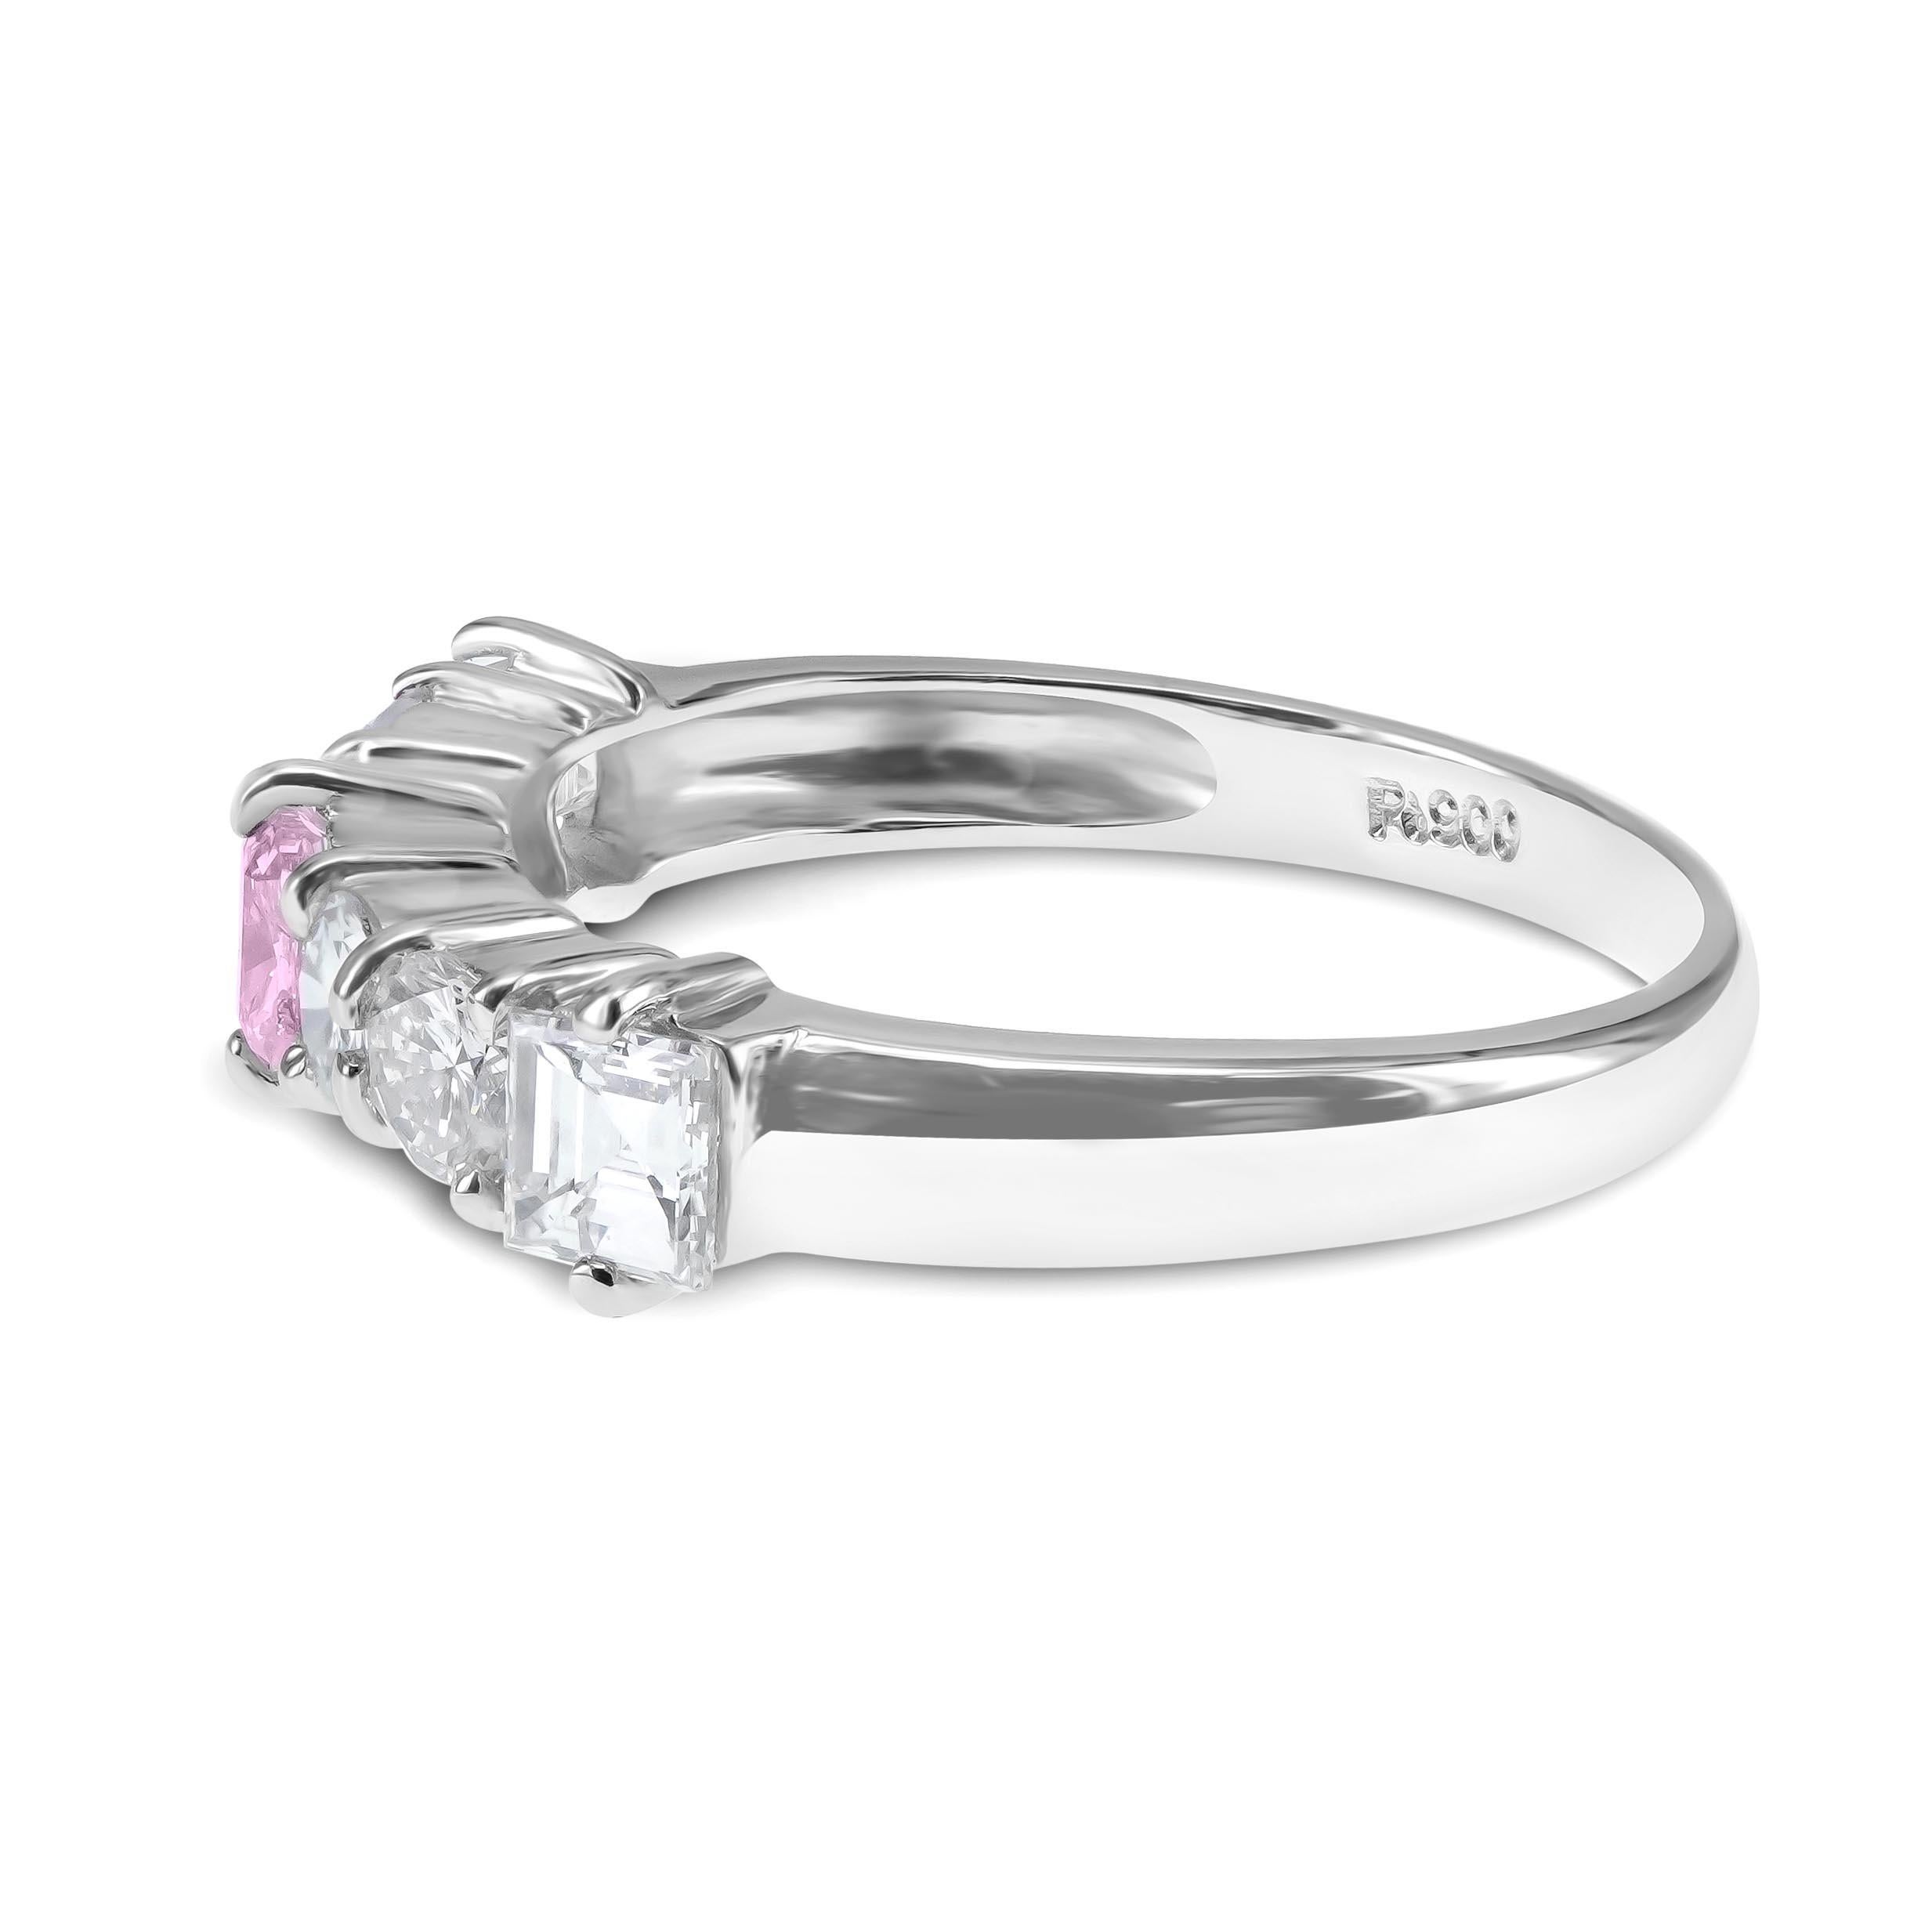 Un diamant rose de fantaisie certifié CGL de 0,19 carat est serti avec 0,82 carat de diamant blanc brillant de taille ronde et rayonnante. Les diamants roses font partie des diamants fantaisie les plus séduisants du marché. En raison de leur extrême